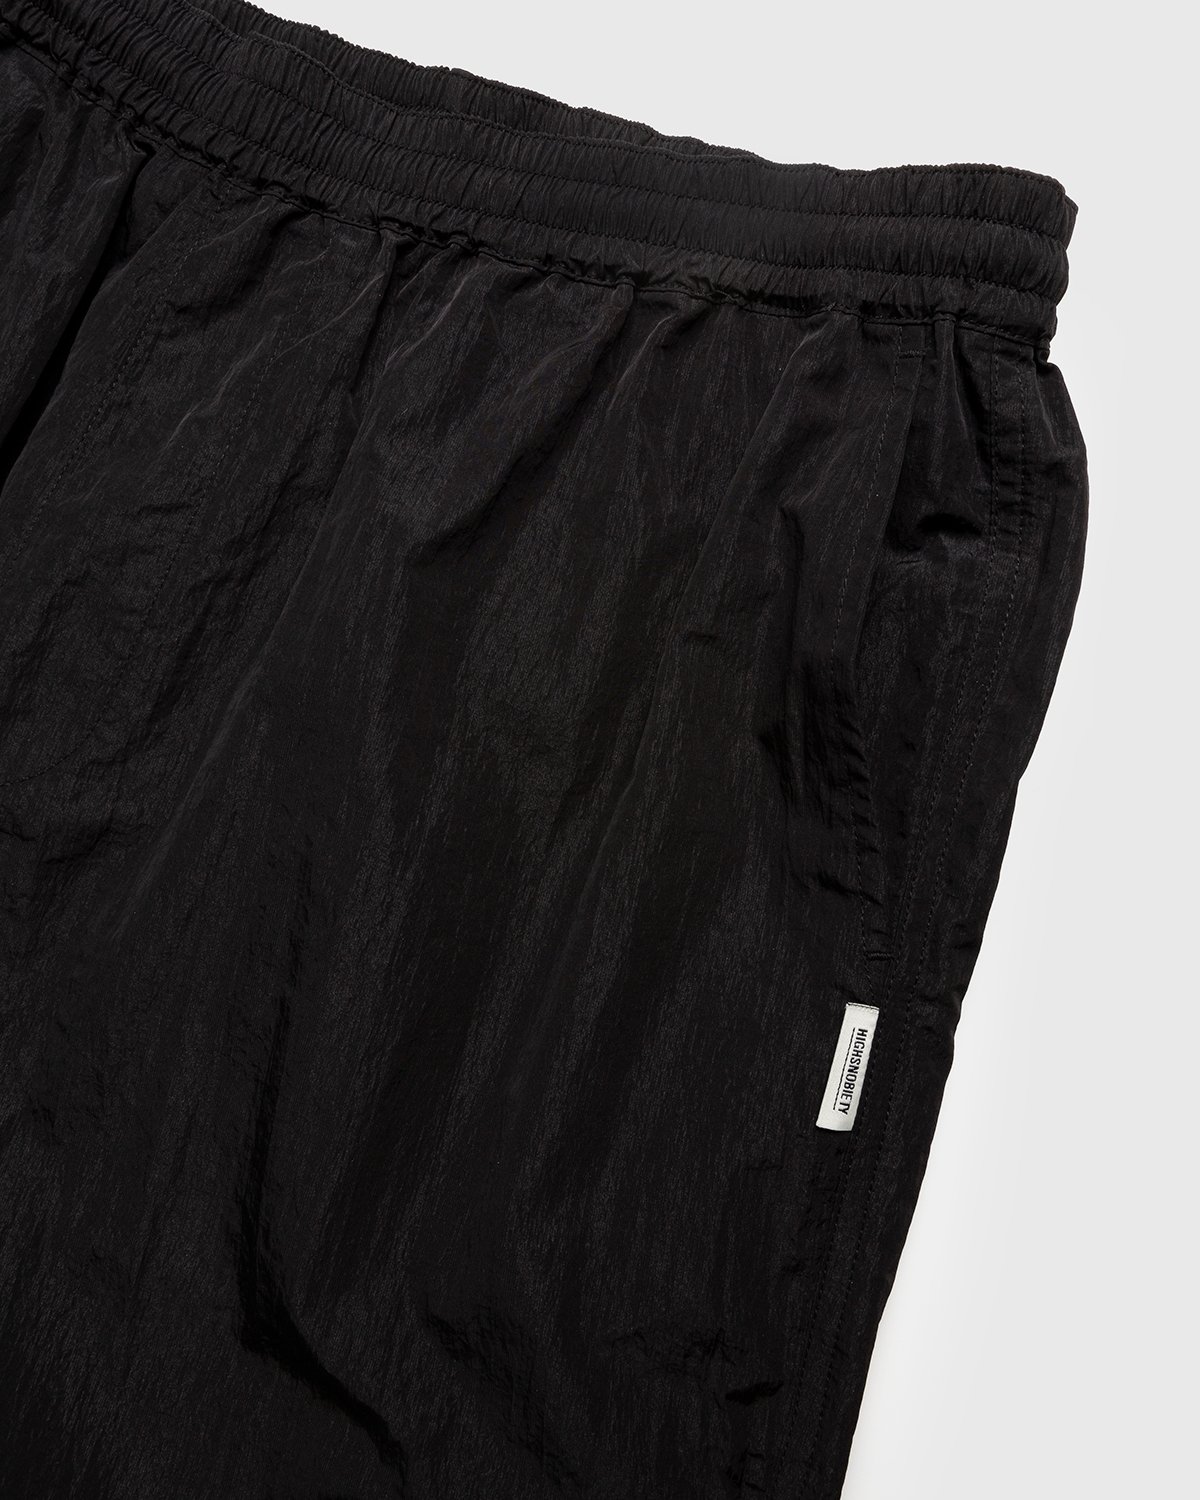 Highsnobiety - Crepe Nylon Elastic Pants Black - Clothing - Black - Image 3